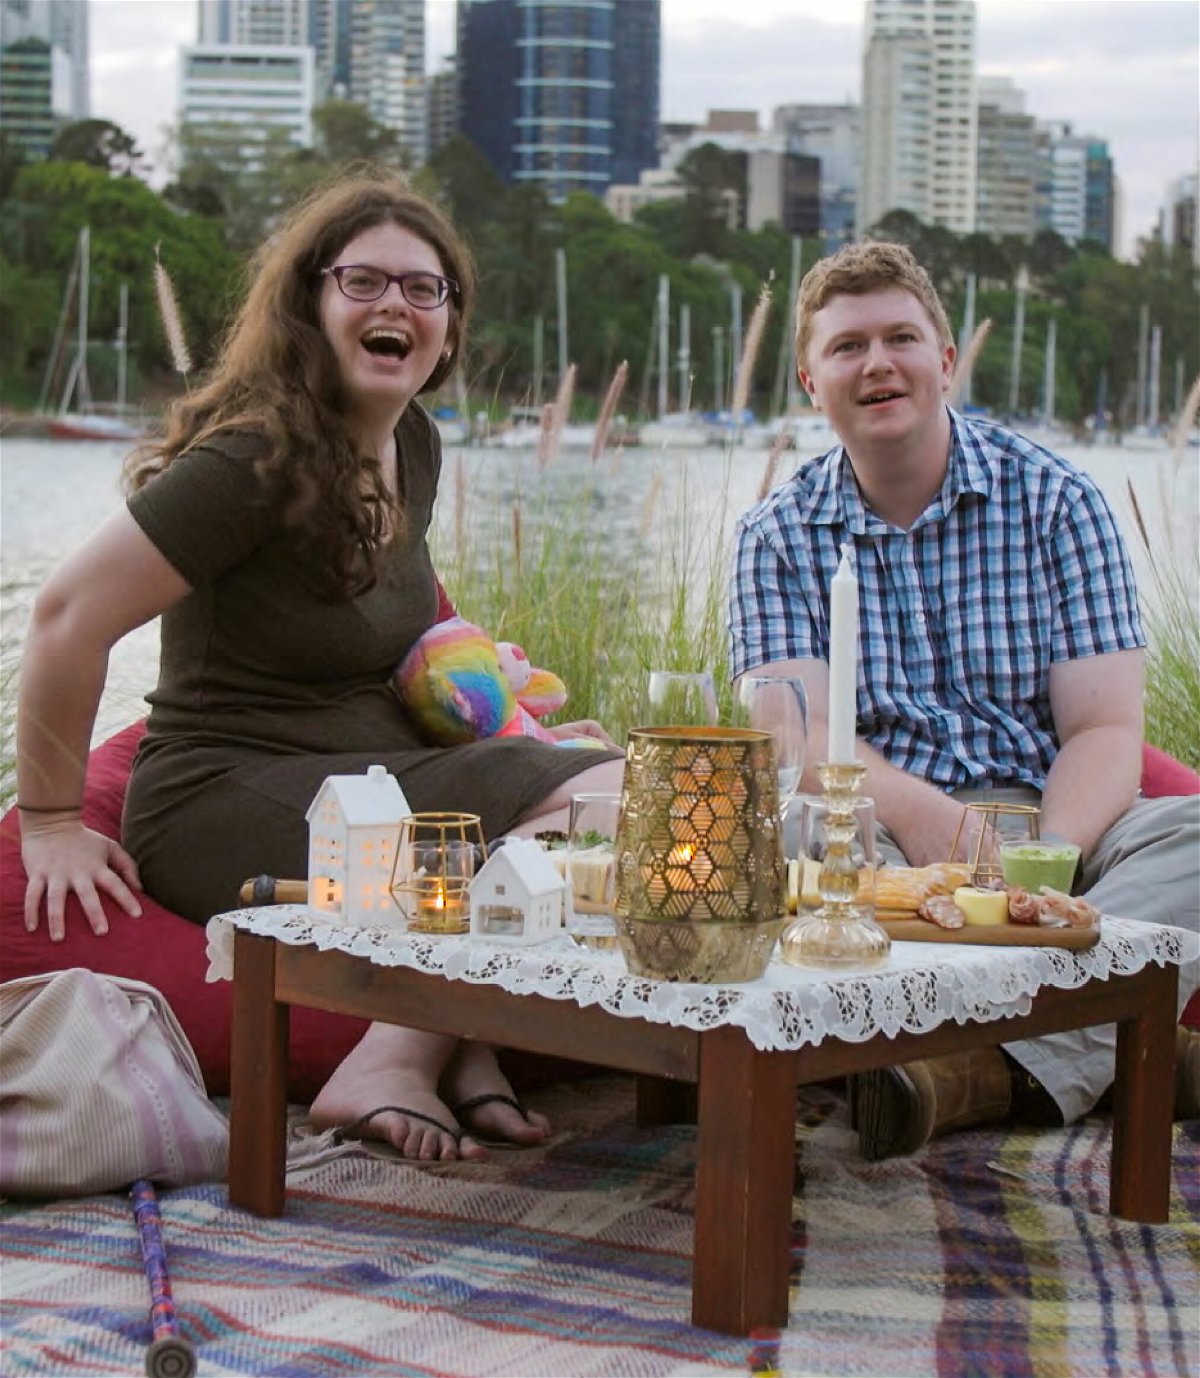 Ruth e Thomas seduti a un tavolino basso pieno di candele